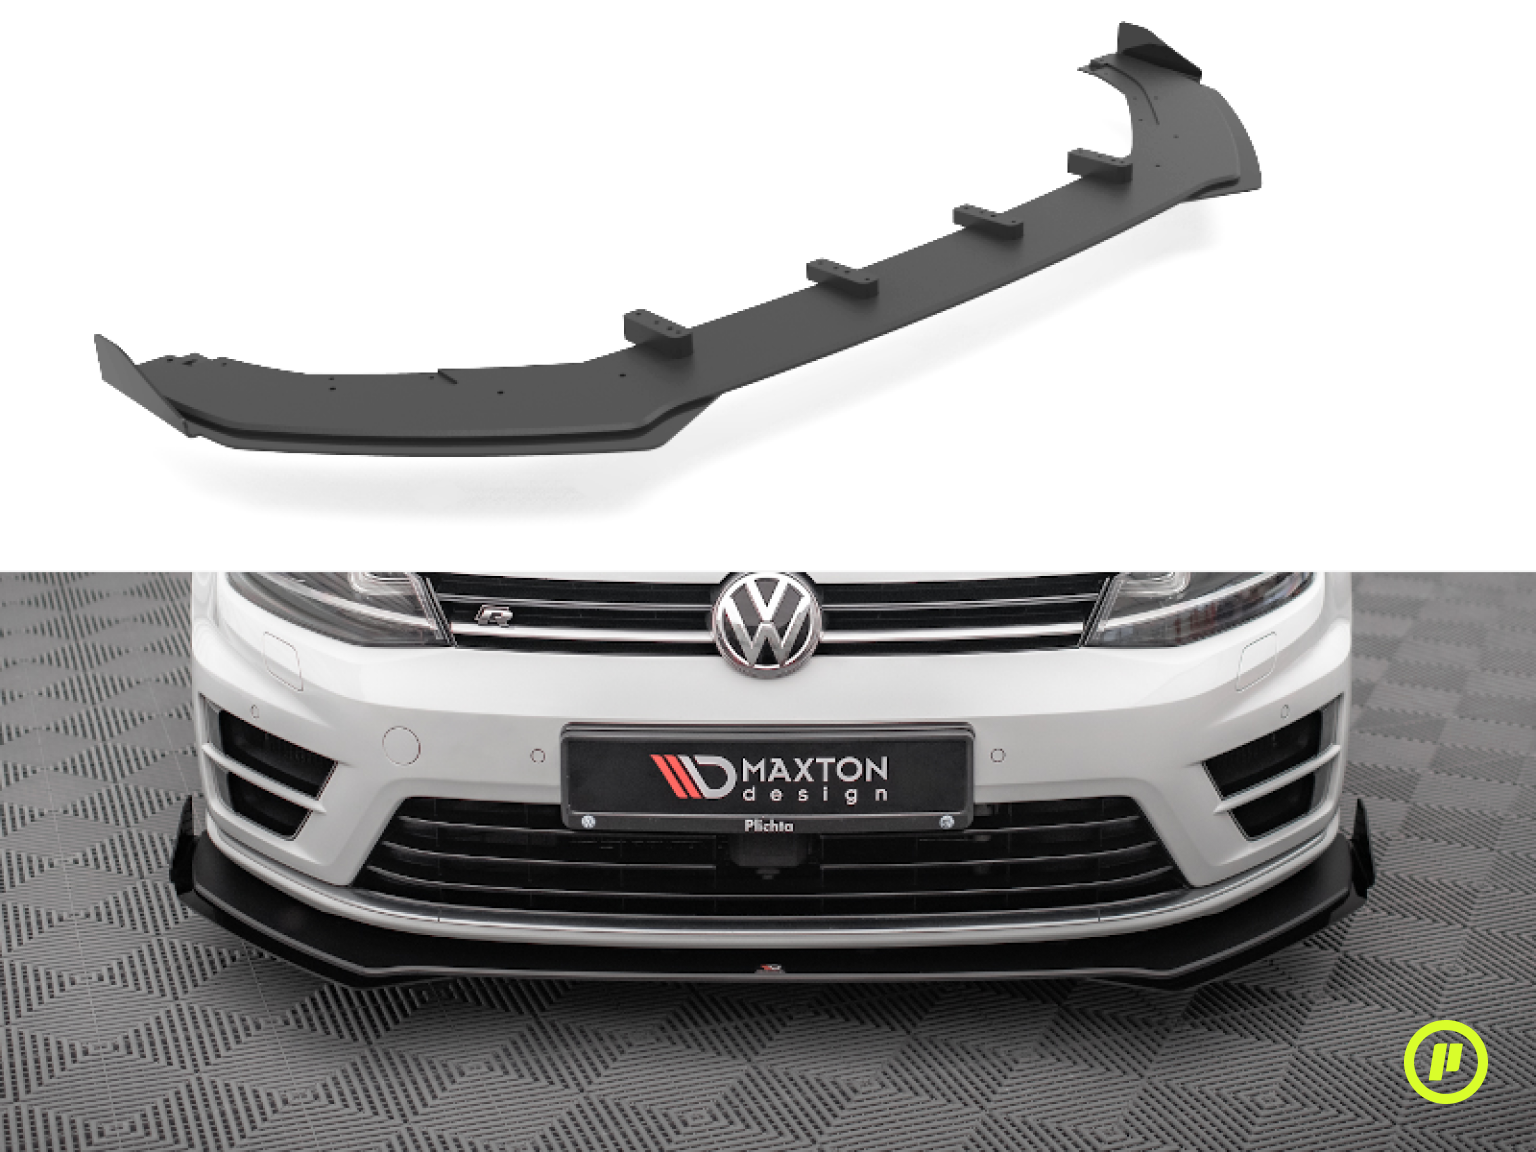 Maxton Design - Street Pro Front Splitter v1 + Flaps for Volkswagen Golf 7 R (Mk7 2013-2016)